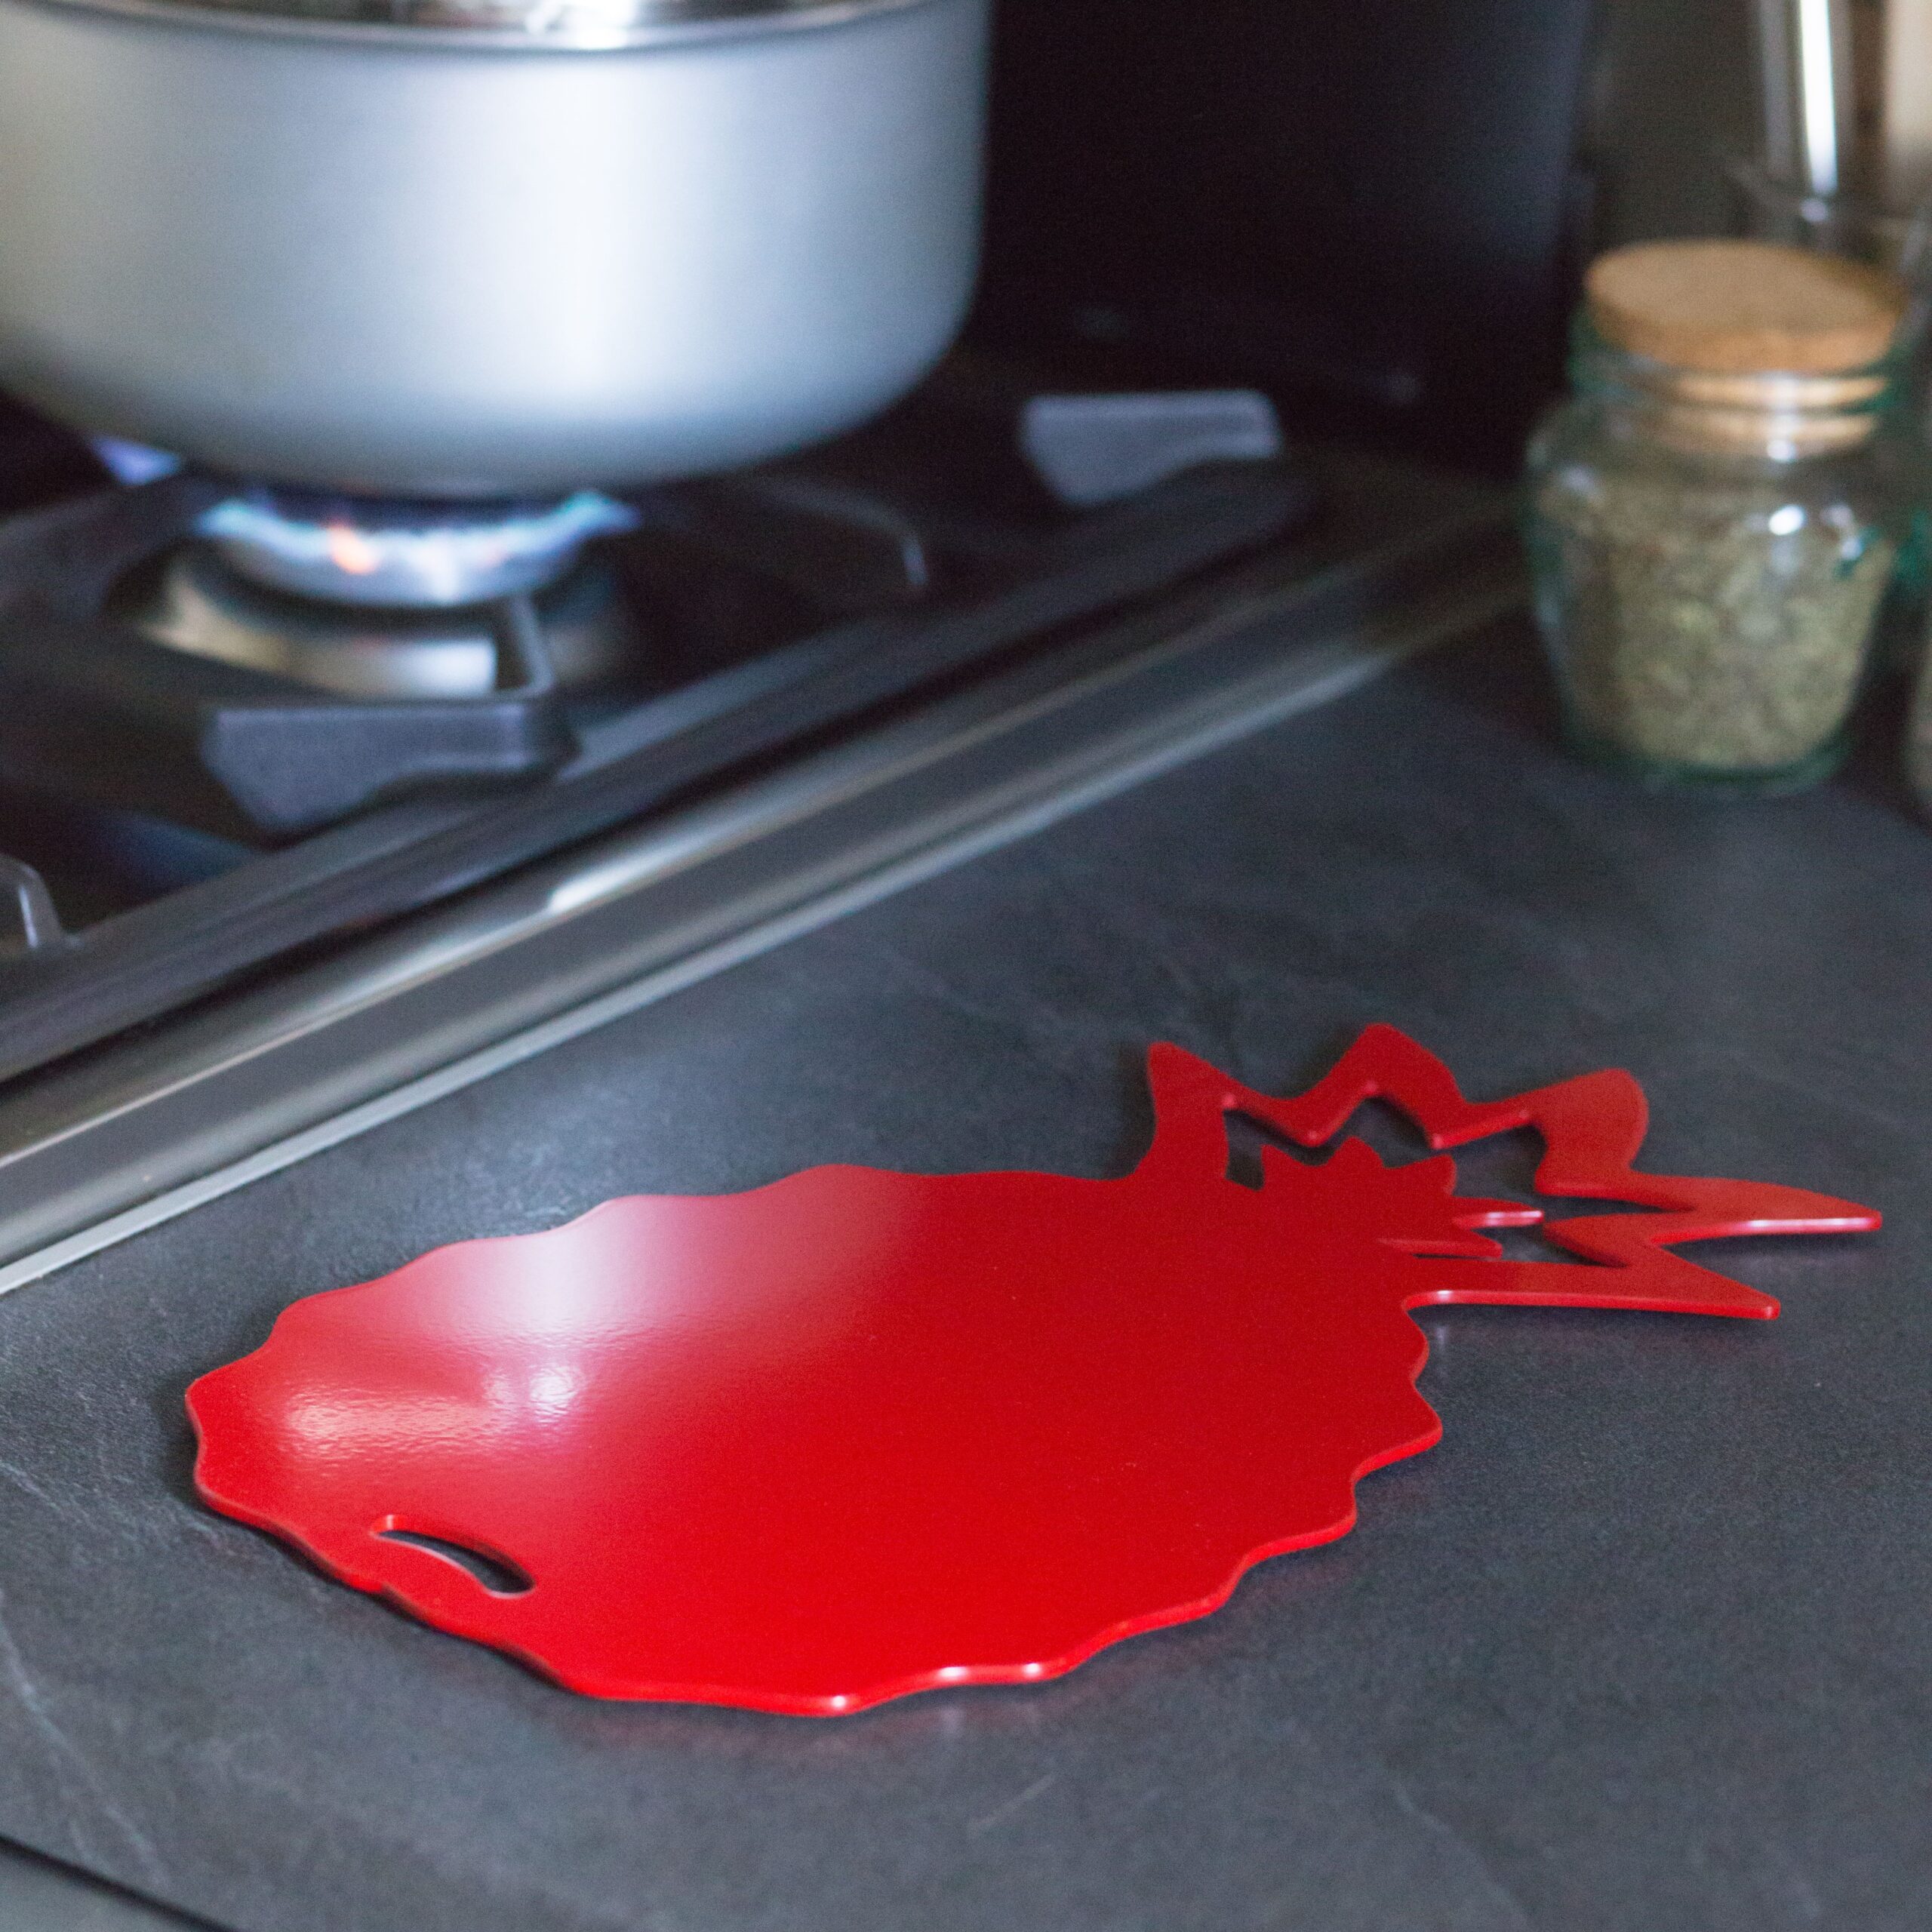 Dessous de plat en métal en forme d'Ananas rouge pour réhausser la décoration de votre cuisine